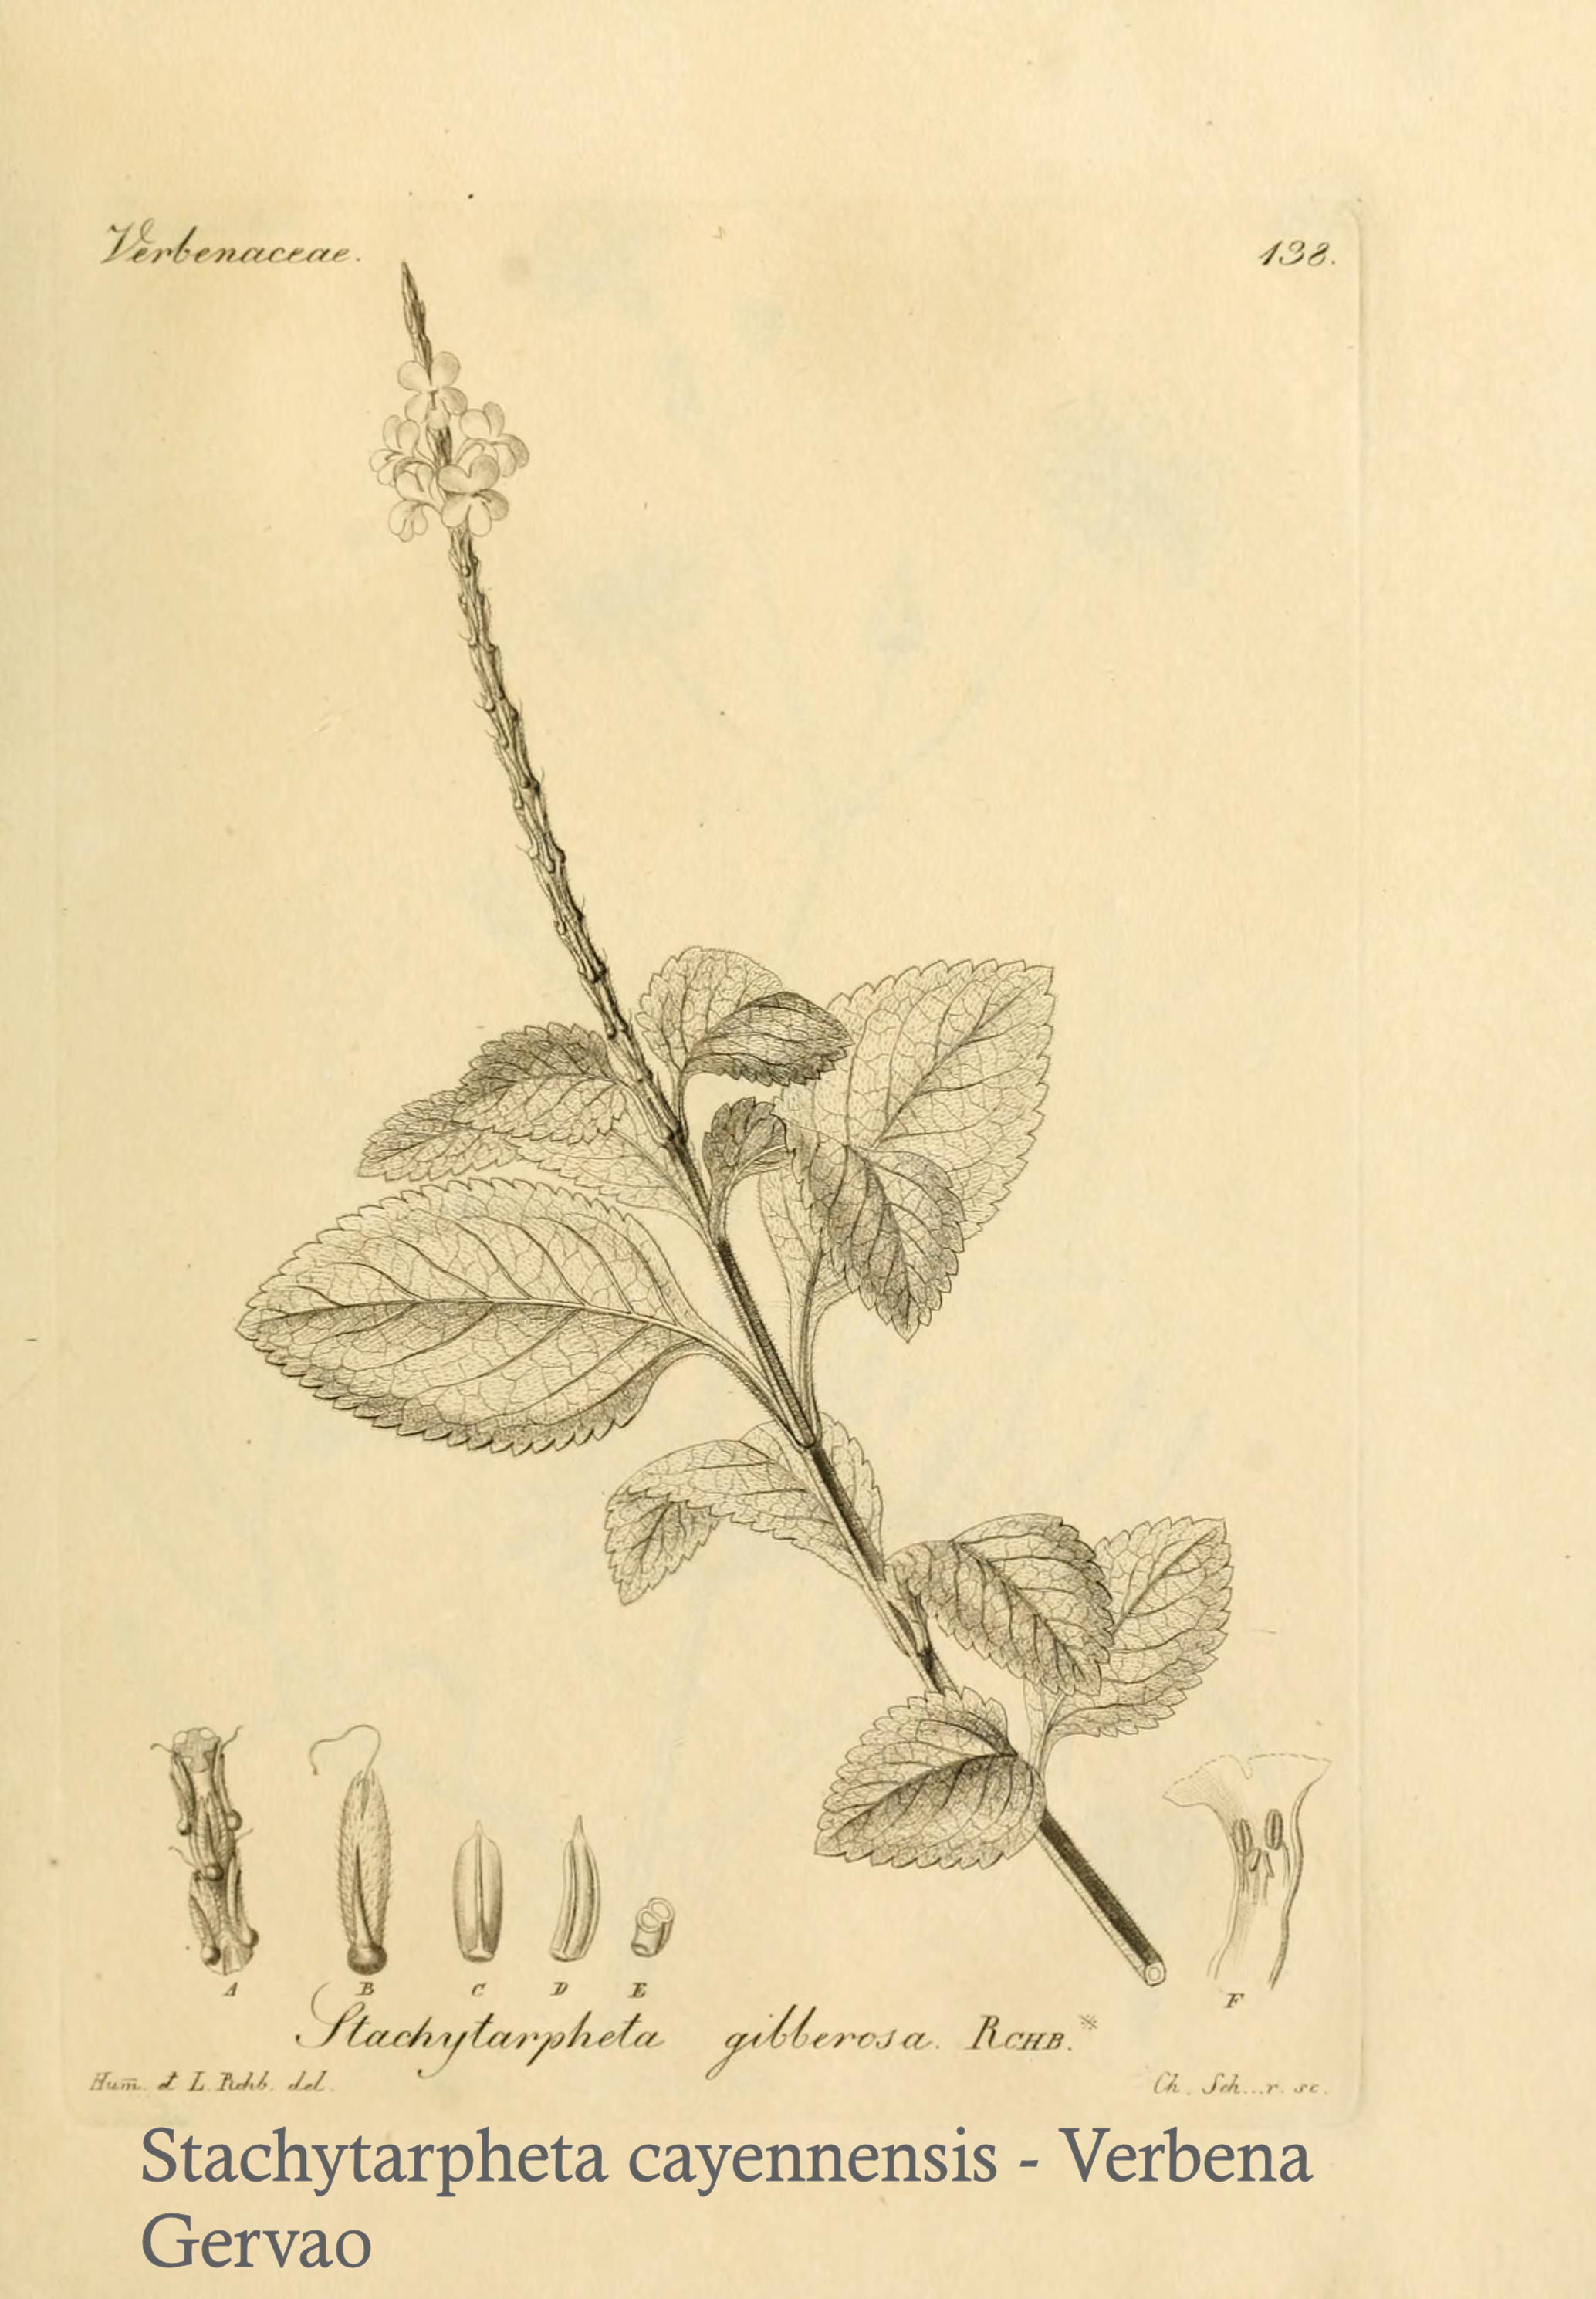 Stachytarpheta cayennensis - Verbena (Gervao)